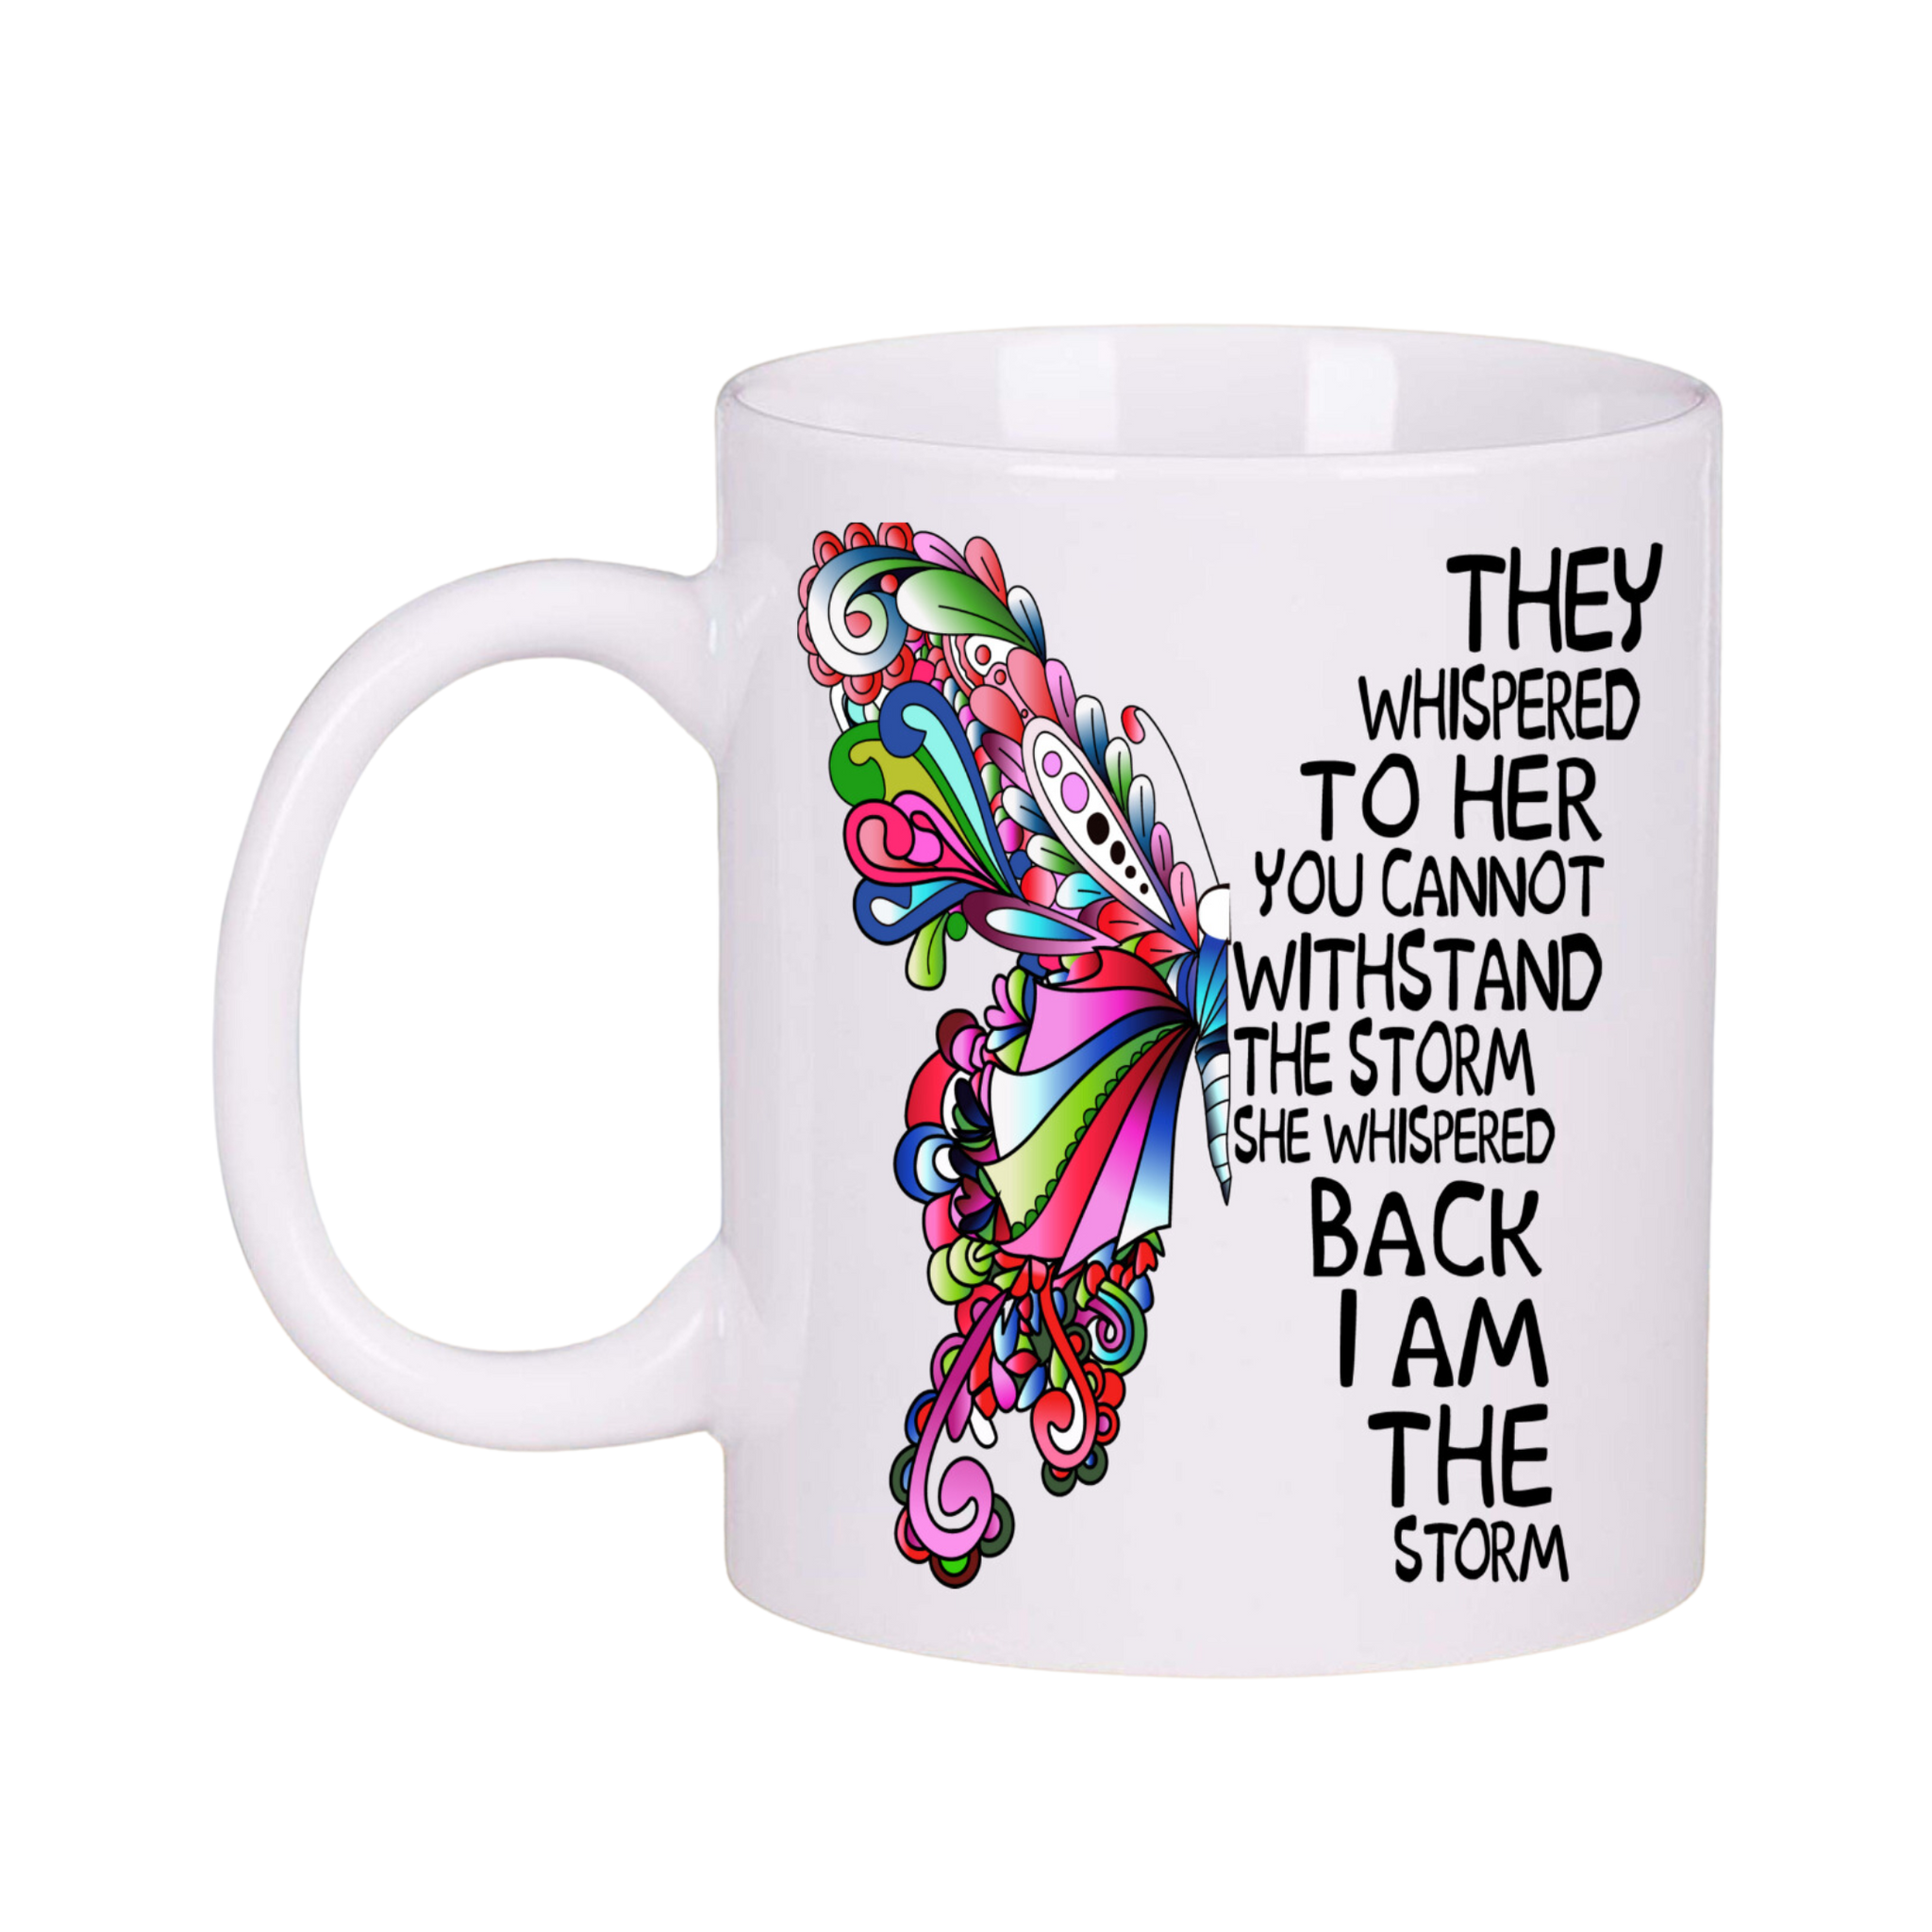 I Am the Storm Women's Inspirational White 11oz Ceramic Coffee Tea Mug Gift Set - Inspire Me Positive